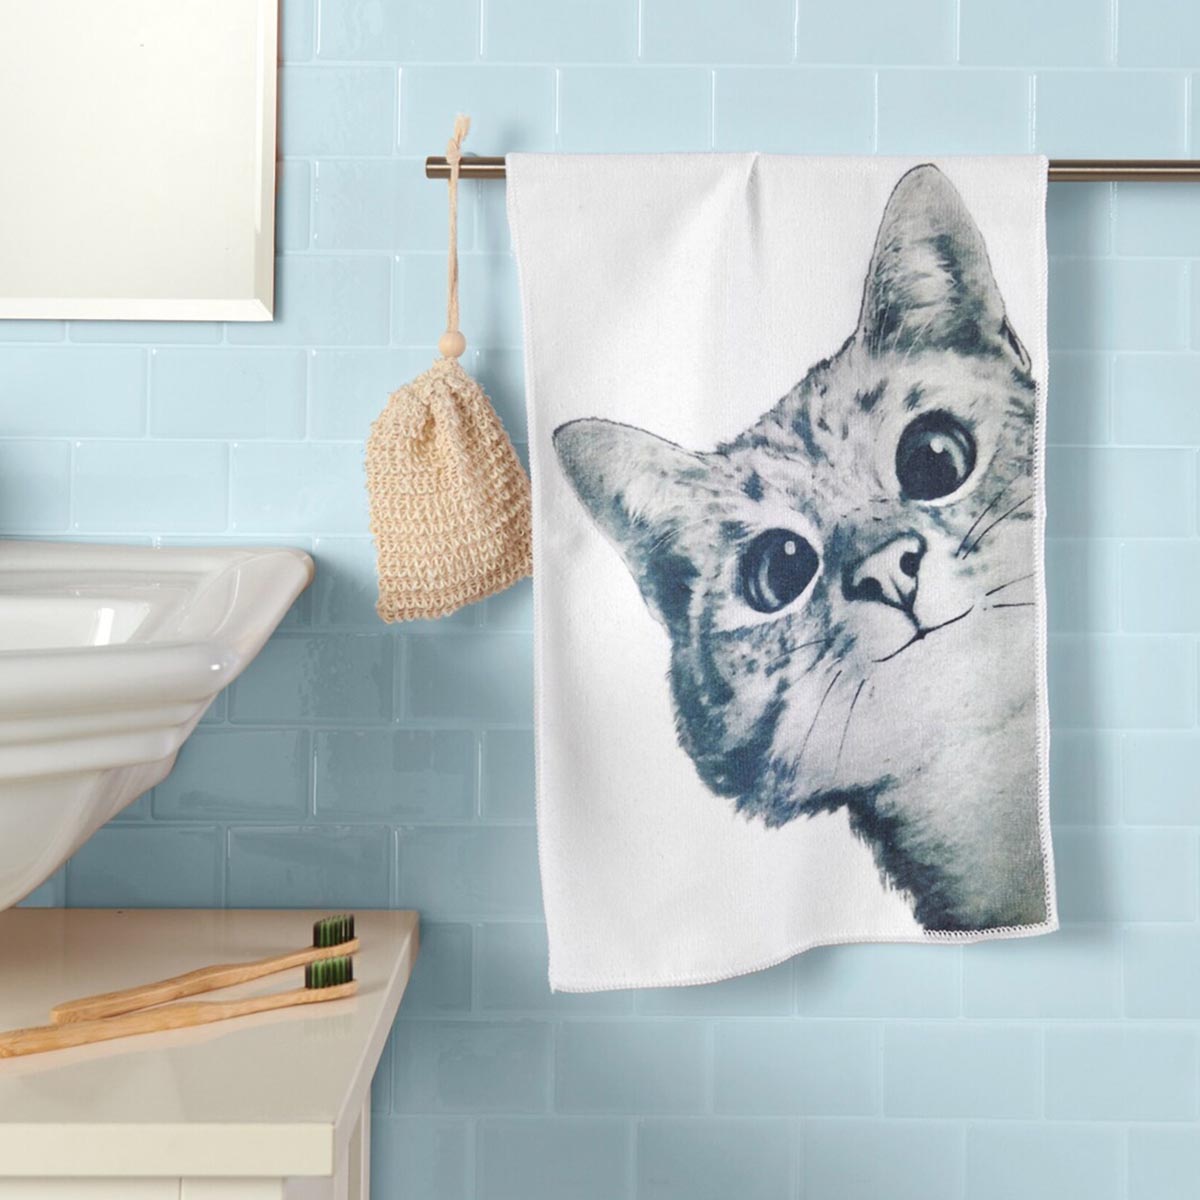 E-shop Die moderne Hausfrau Ručník pro hosty Kočka